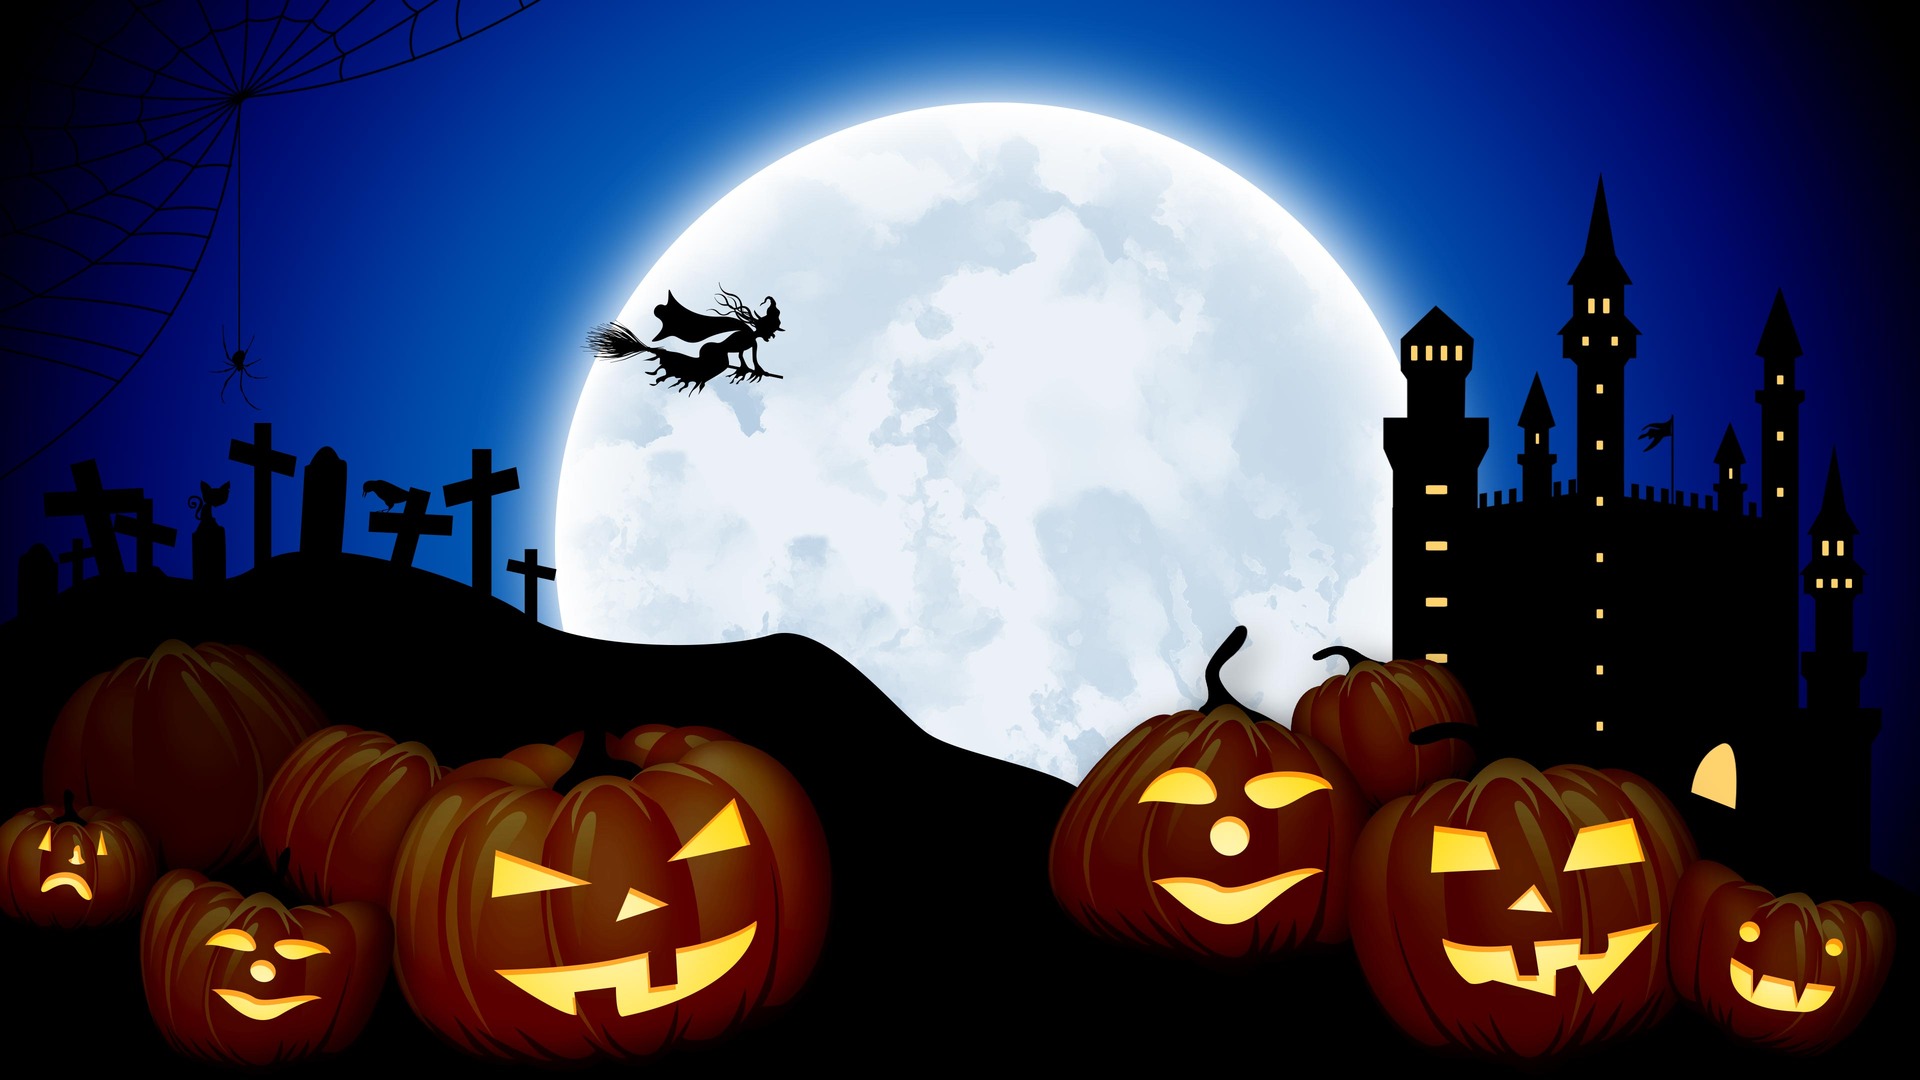 Скачать обои бесплатно Ночь, Луна, Замок, Хэллоуин, Фонарь Джека, Ведьма, Праздничные, Кладбище картинка на рабочий стол ПК